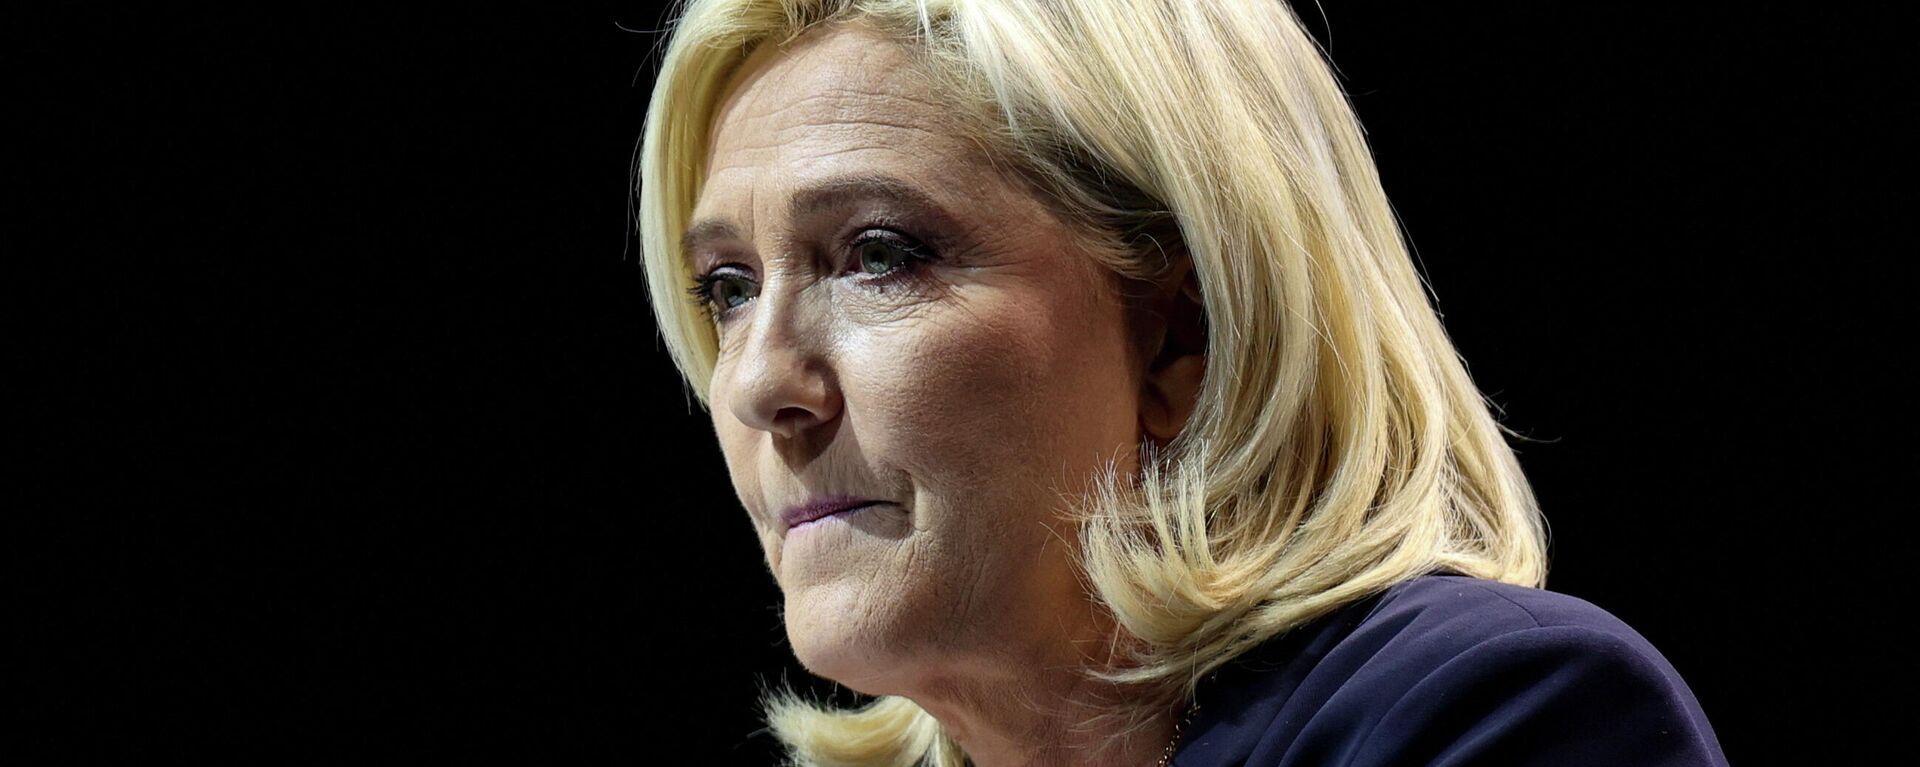 Marine Le Pen, líder do partido de extrema direita Reagrupamento Nacional da França (RN) e candidata à eleição presidencial francesa de 2022 durante comício em Reims, 5 de fevereiro de 2022 - Sputnik Brasil, 1920, 08.02.2022